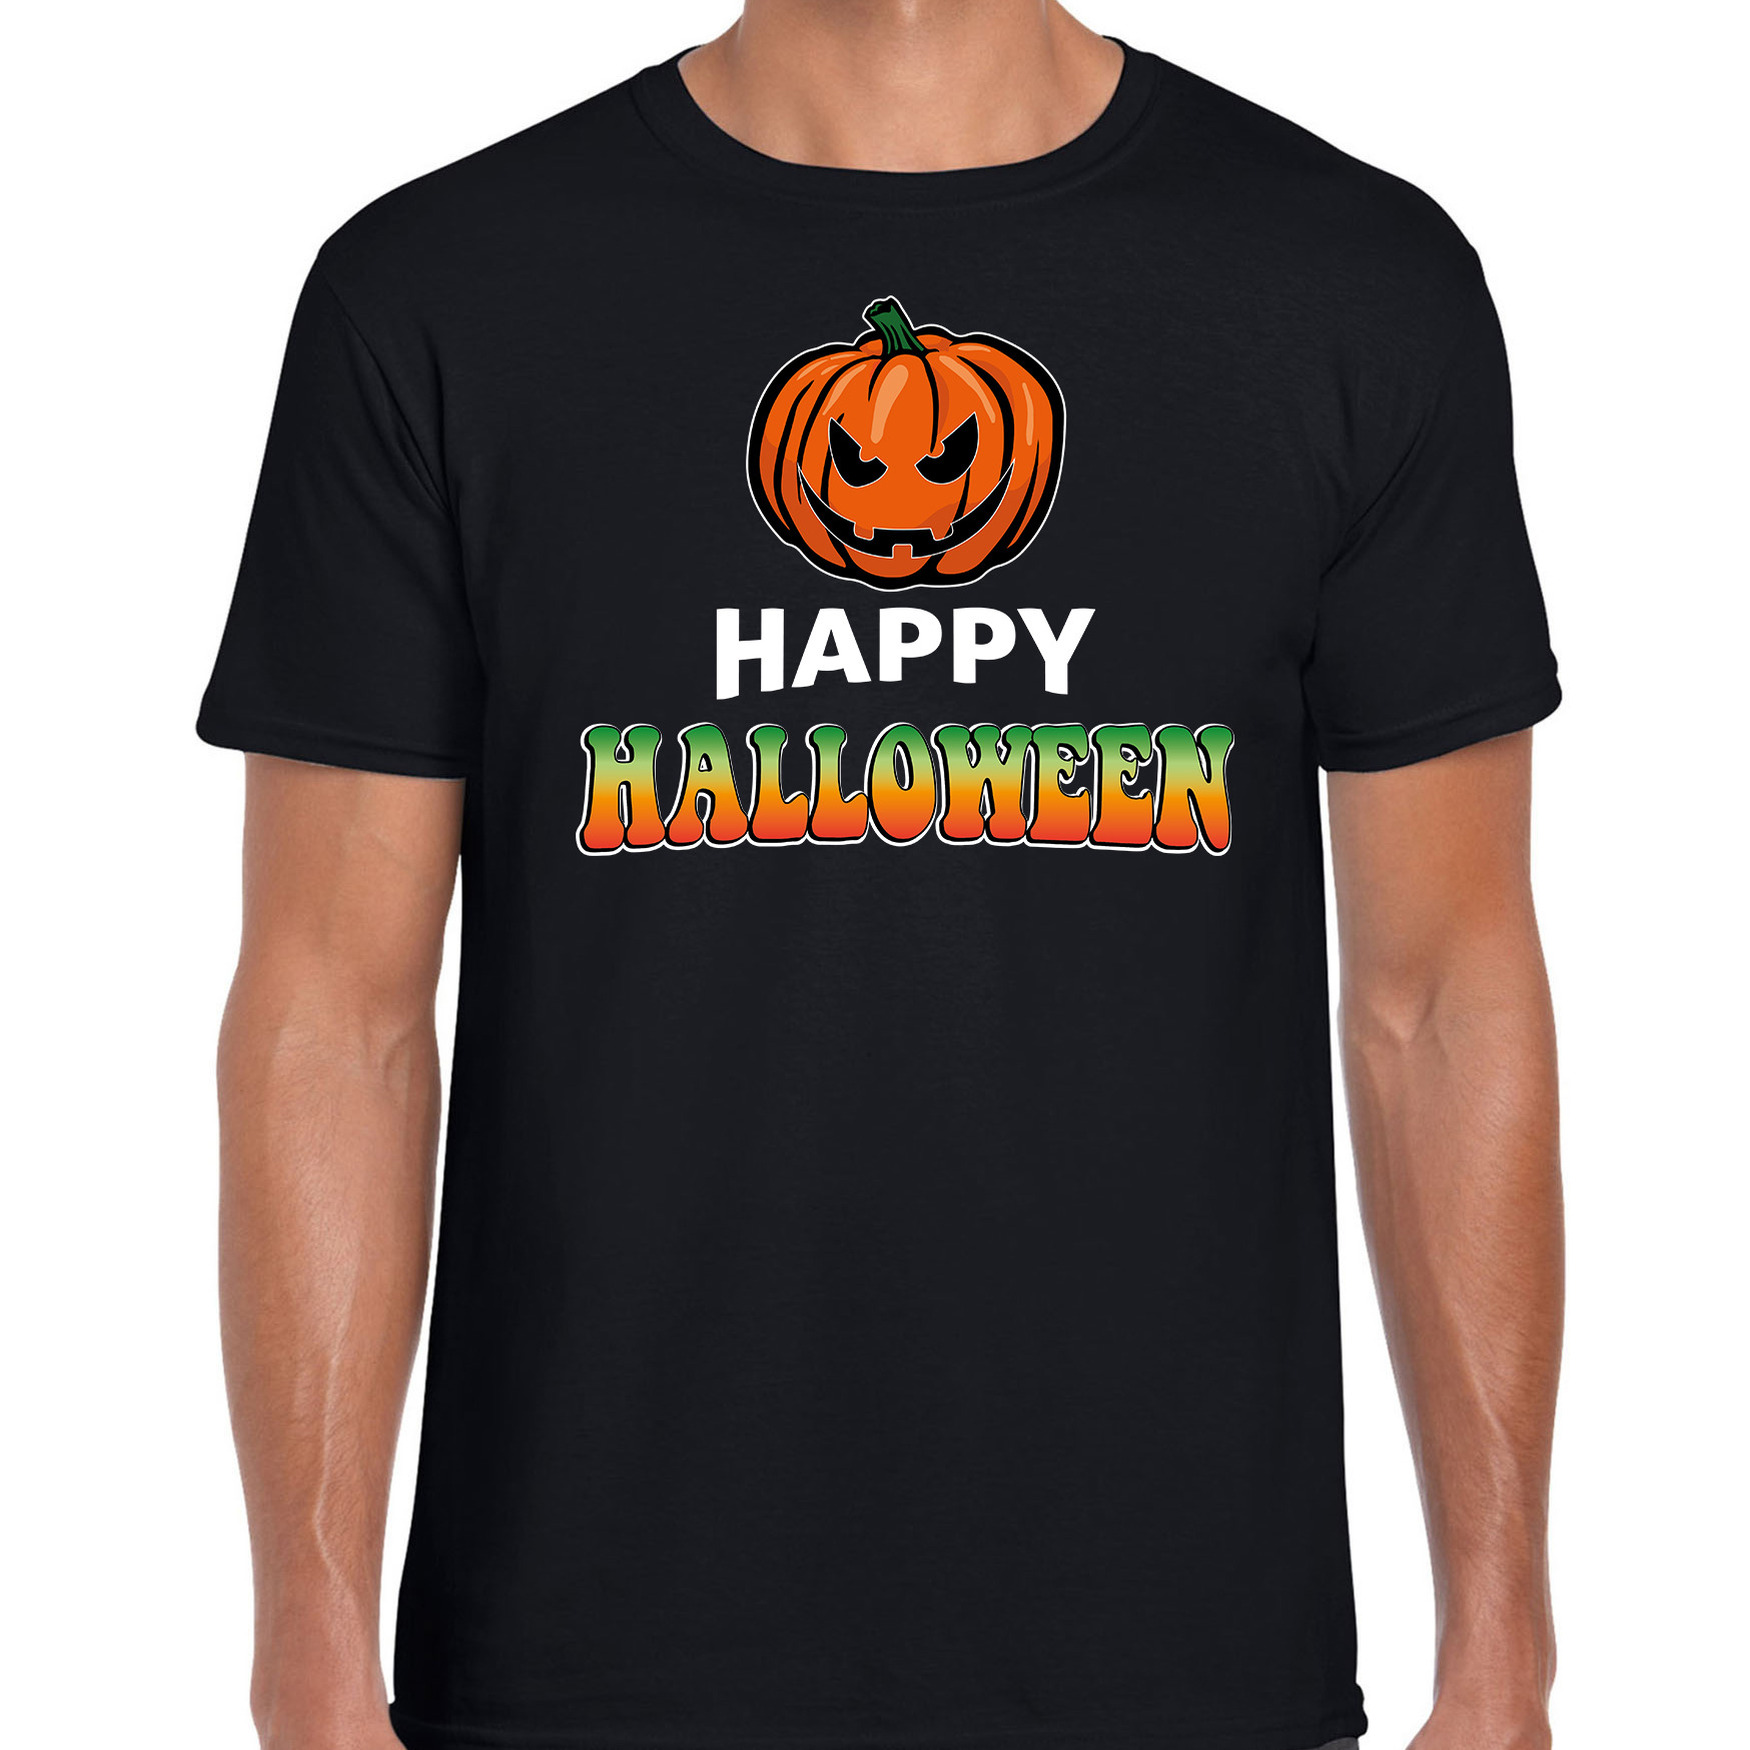 Halloween - Pompoen / happy halloween verkleed t-shirt zwart voor heren